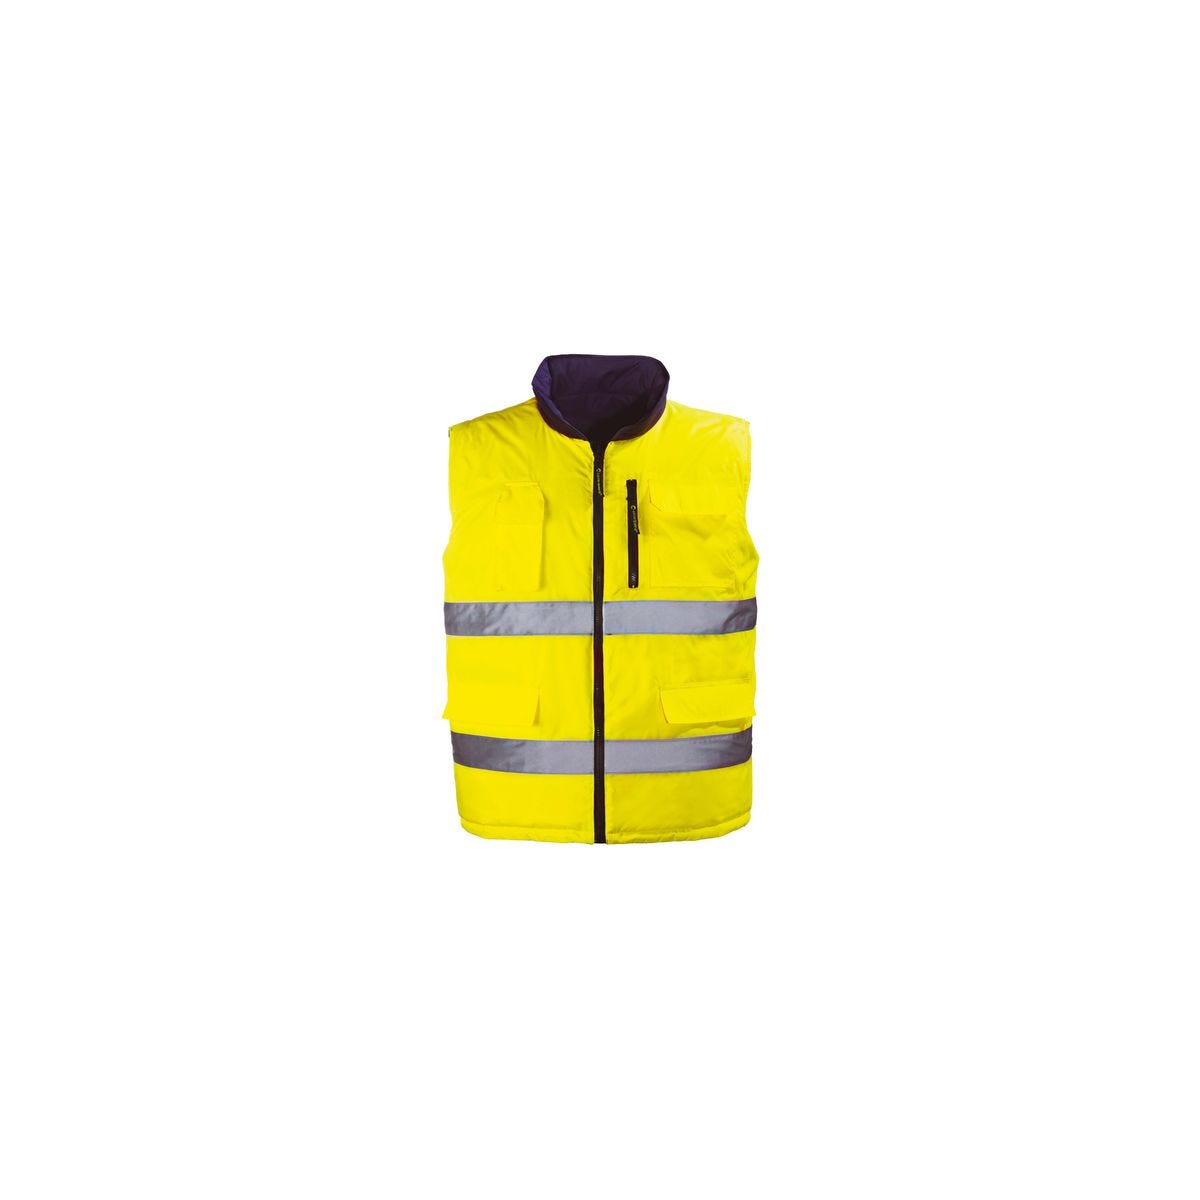 HI-WAY gilet réversible jaune HV/gris, Polyester Oxford 150D - Coverguard - Taille L 0